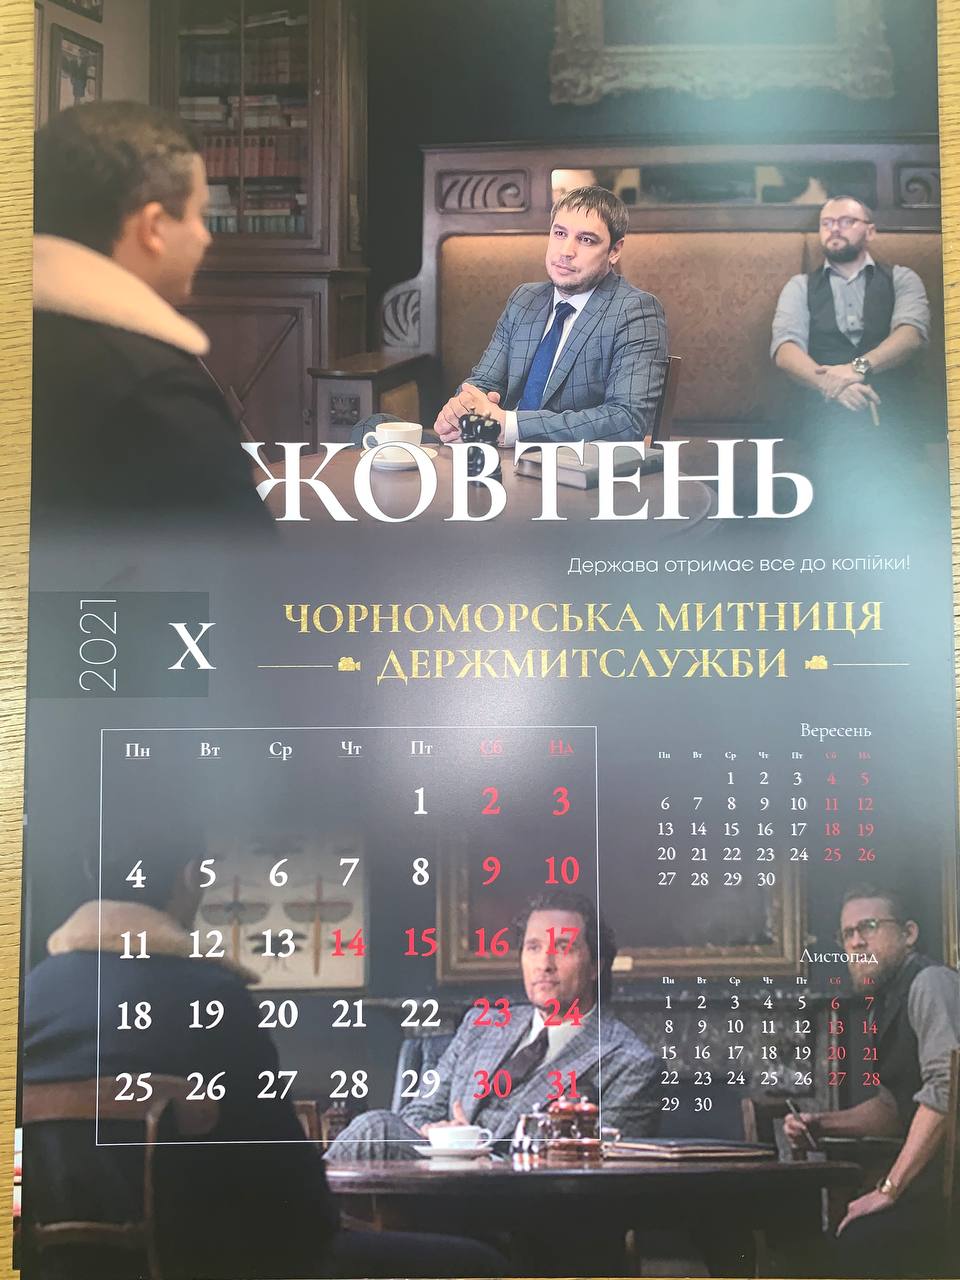 Украинские таможенники снялись в календаре на 2021 год в образе бандитов из фильма Гая Ричи. Фото: Твиттер